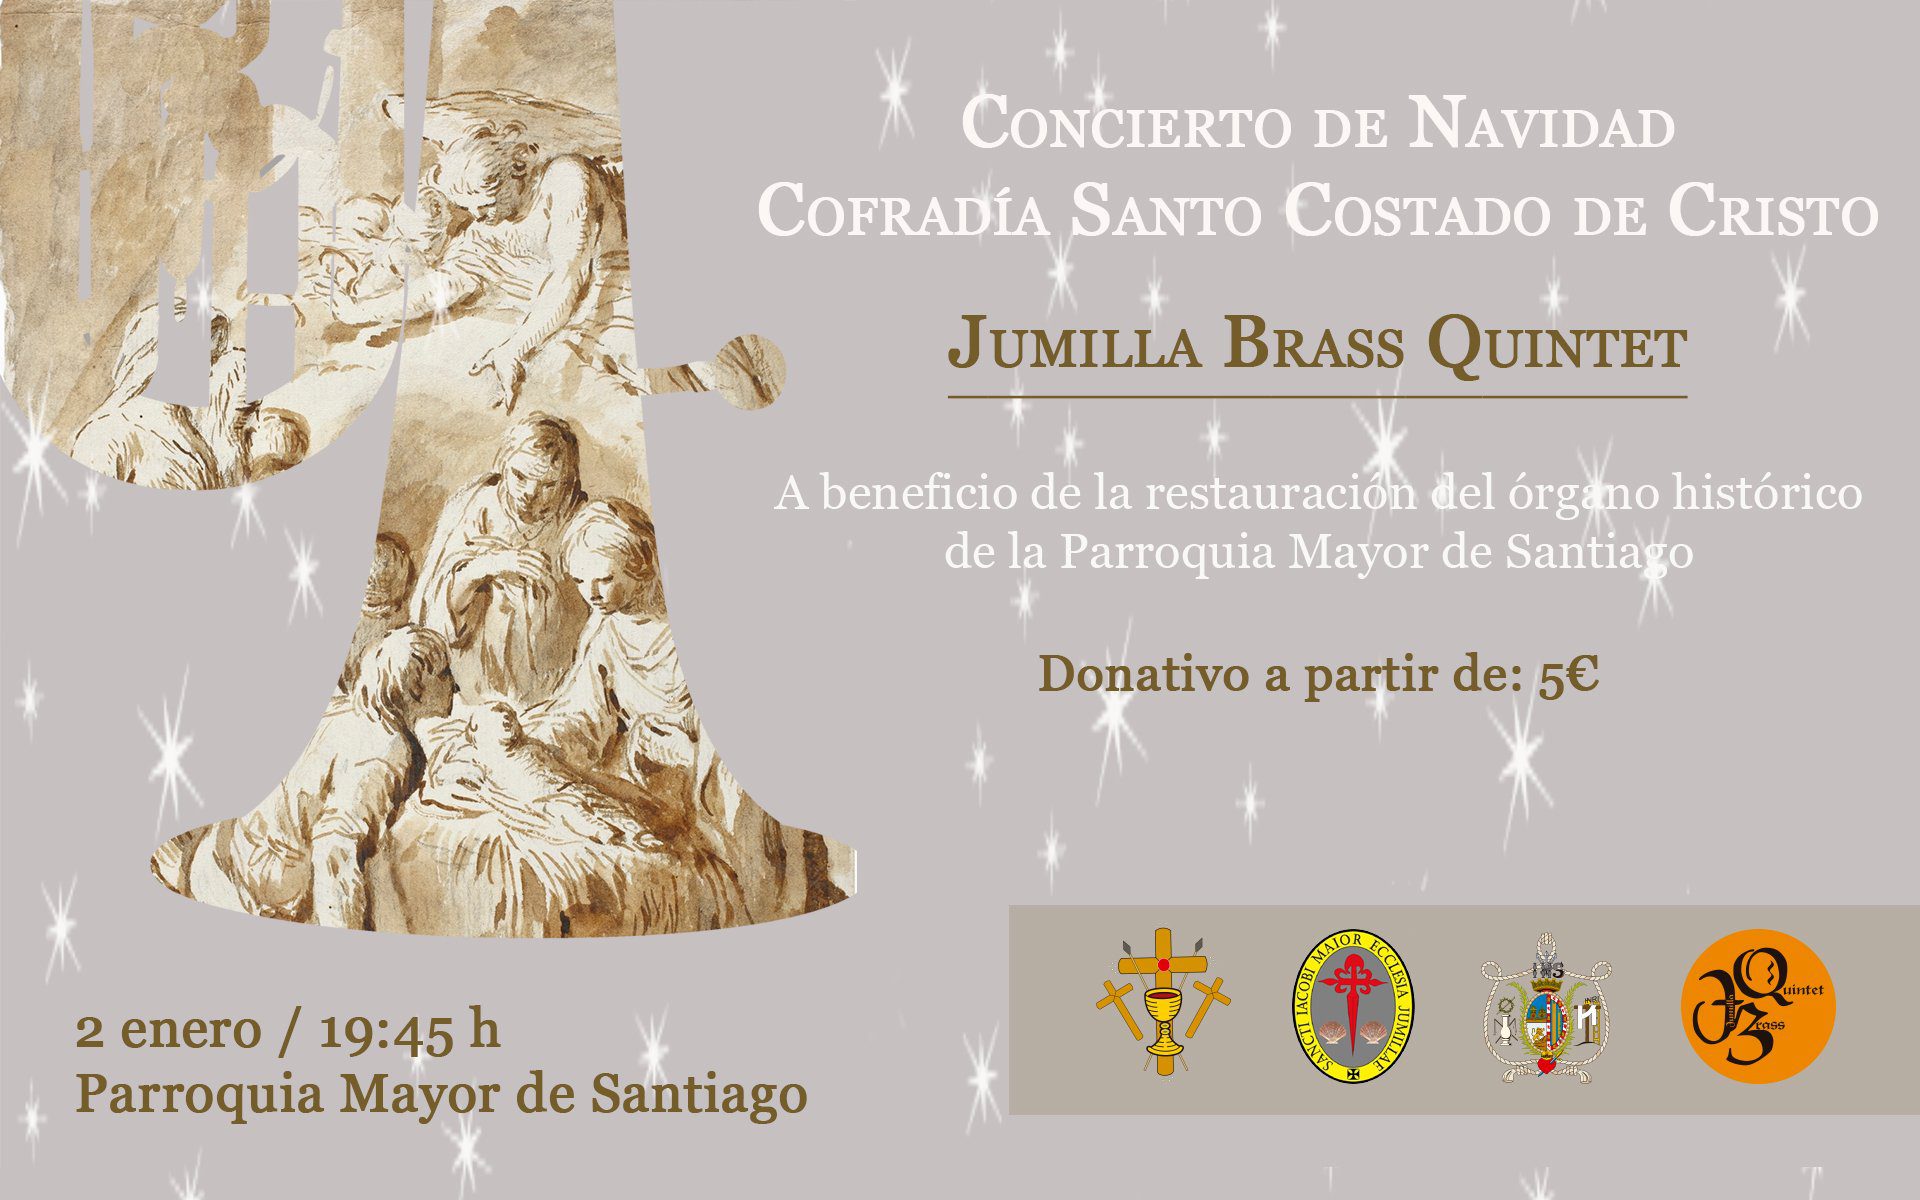 El Santo Costado organiza una misa de Navidad, concierto con Brass Quintet, entrega de cartas de Reyes y recogida de juguetes